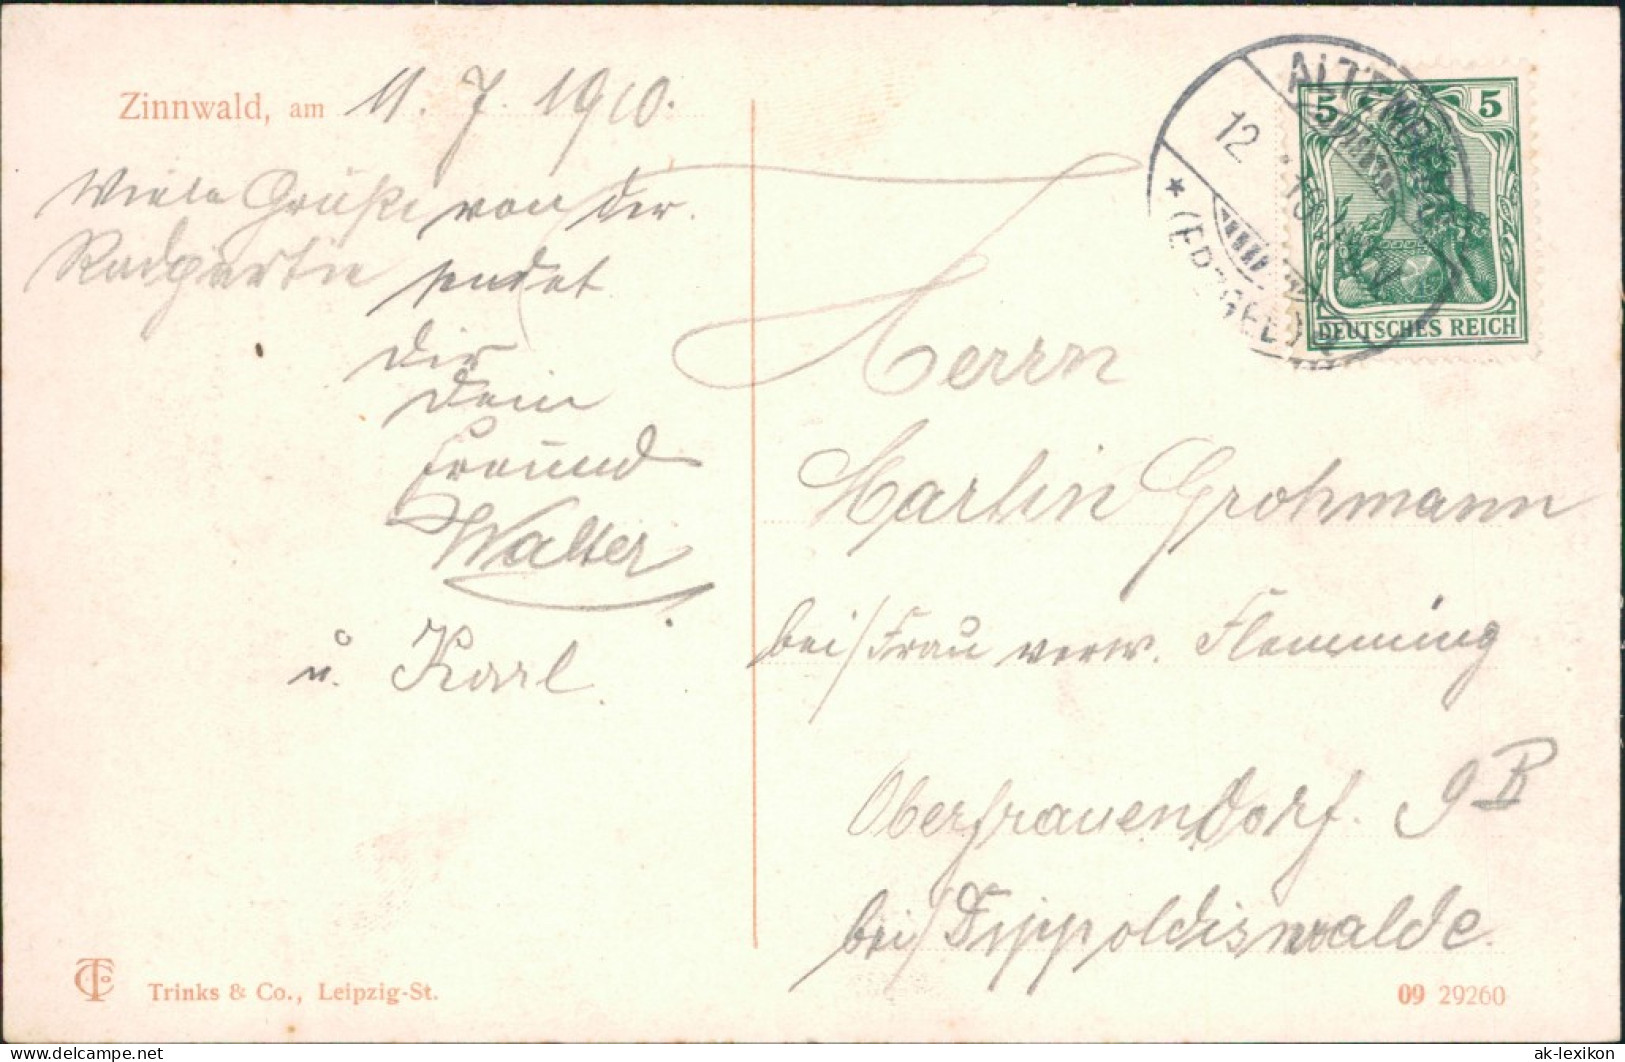 Zinnwald-Georgenfeld-Altenberg (Erzgebirge) Gasthof  Reiter - Gedicht 1909 - Altenberg